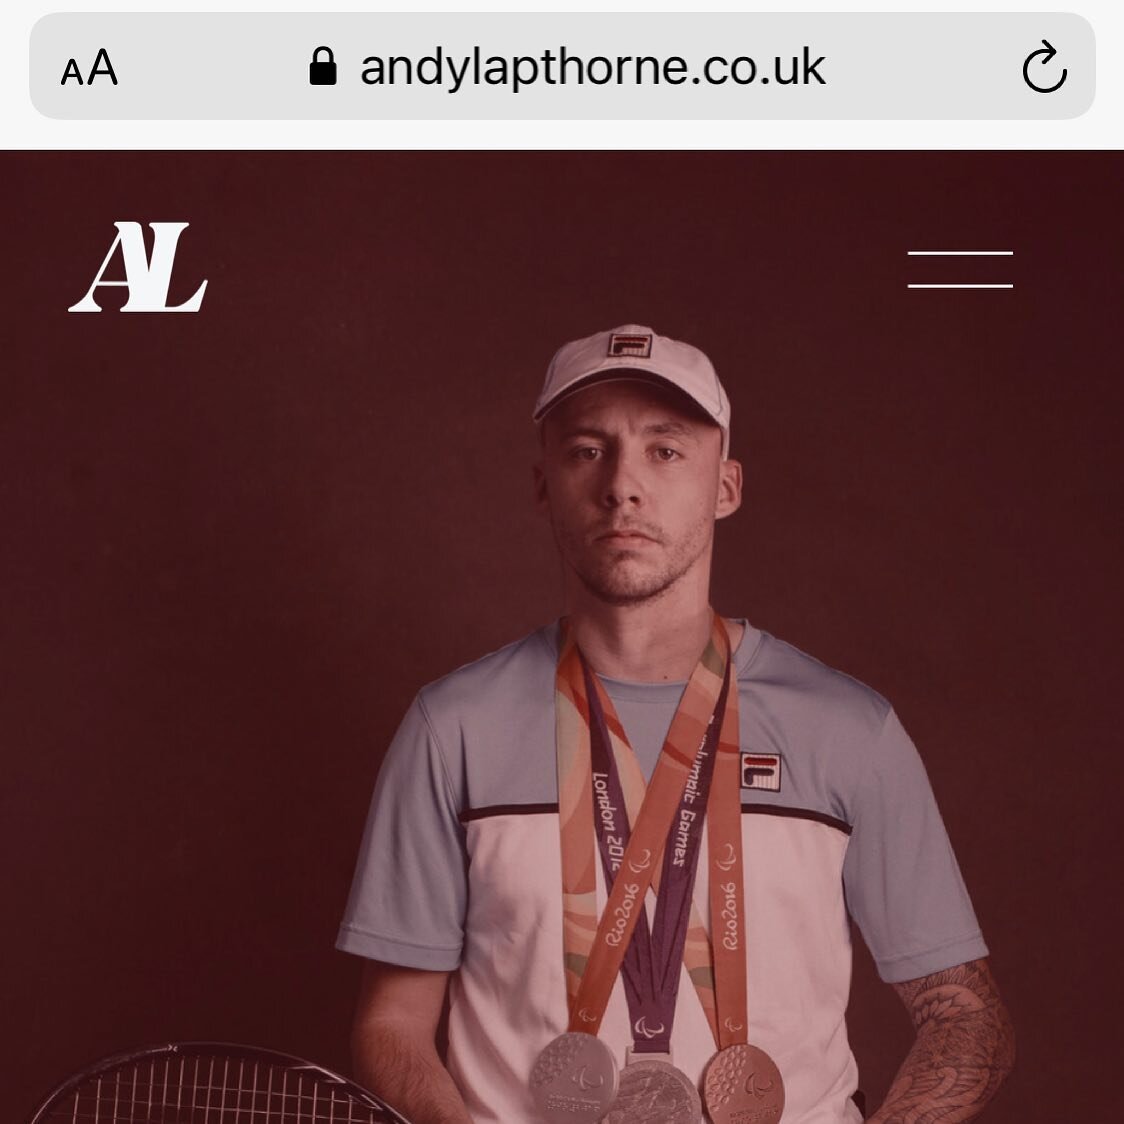 New website get involved take a look 👊🏻 #website andylapthorne.co.uk